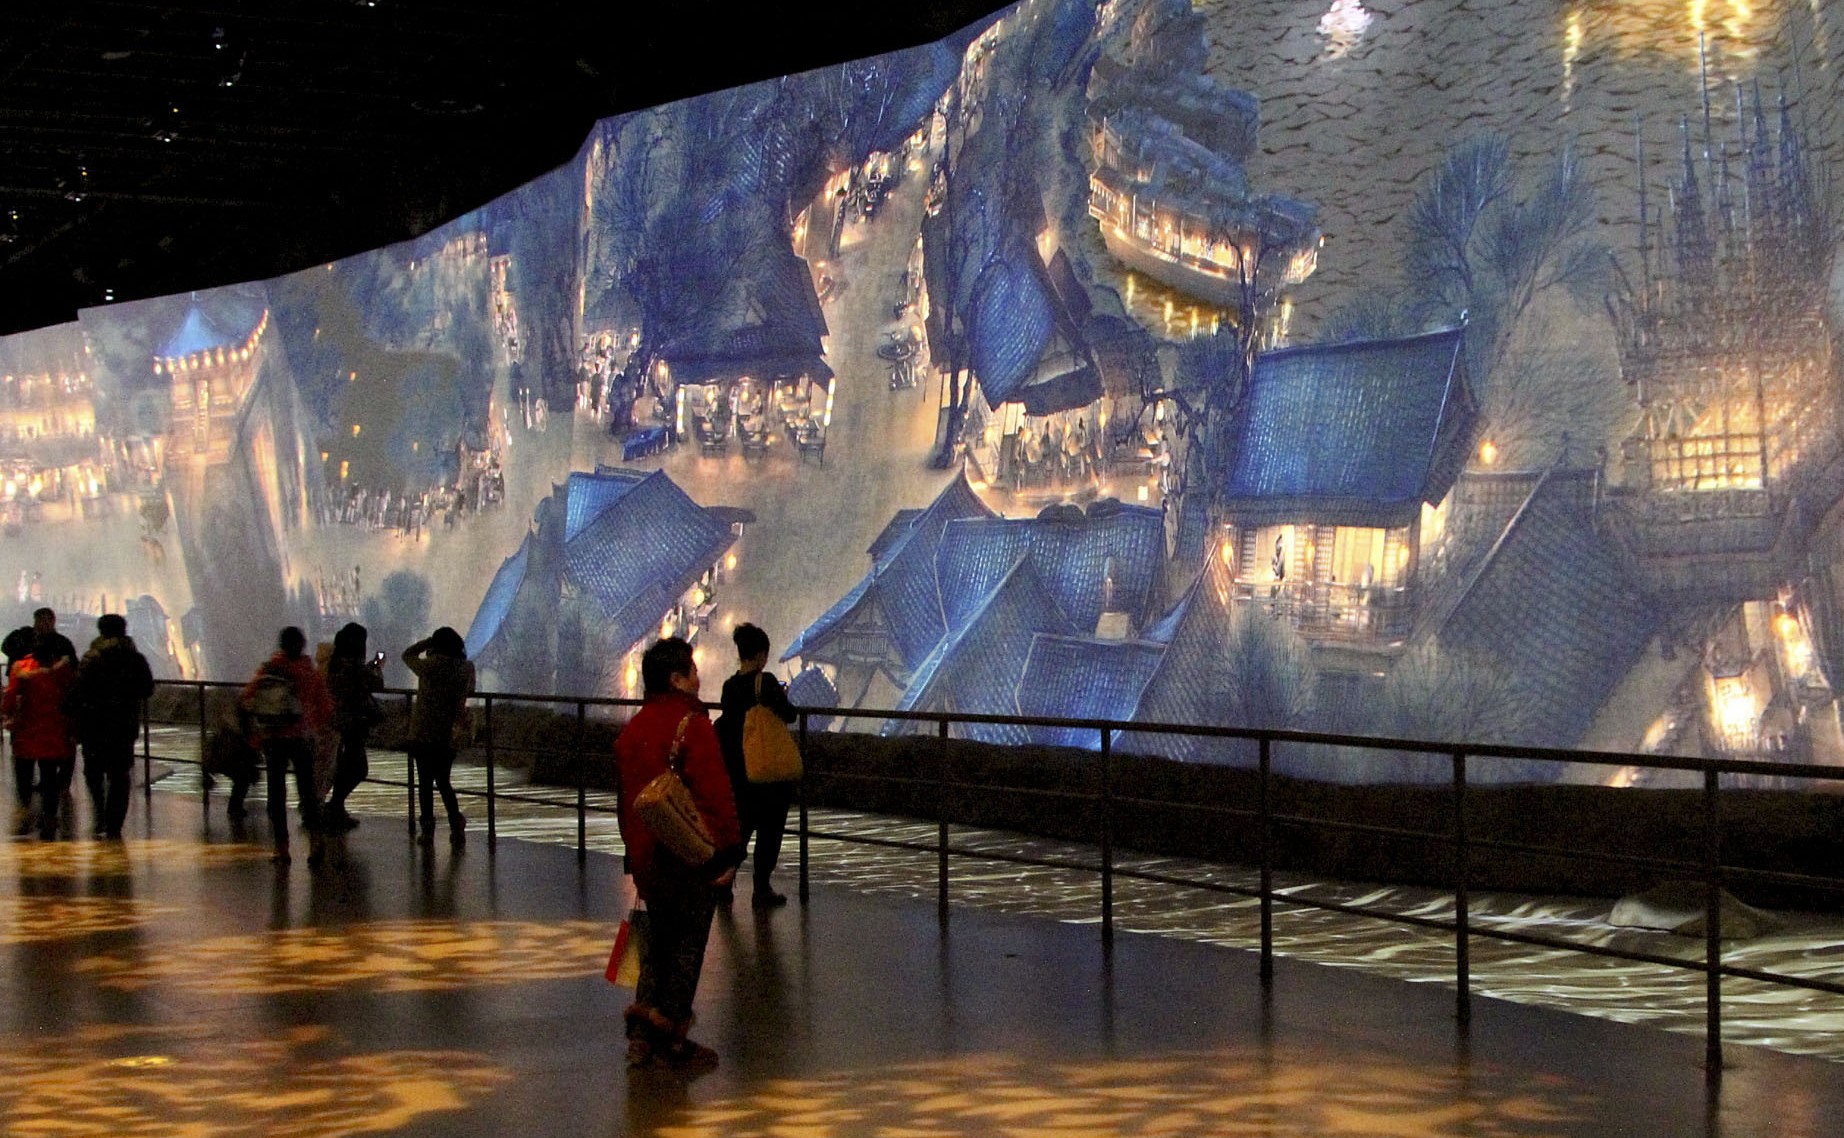 这是一幅展示在博物馆内的巨幅壁画，画面描绘古典山水建筑，前方有几位参观者在观赏和走动。